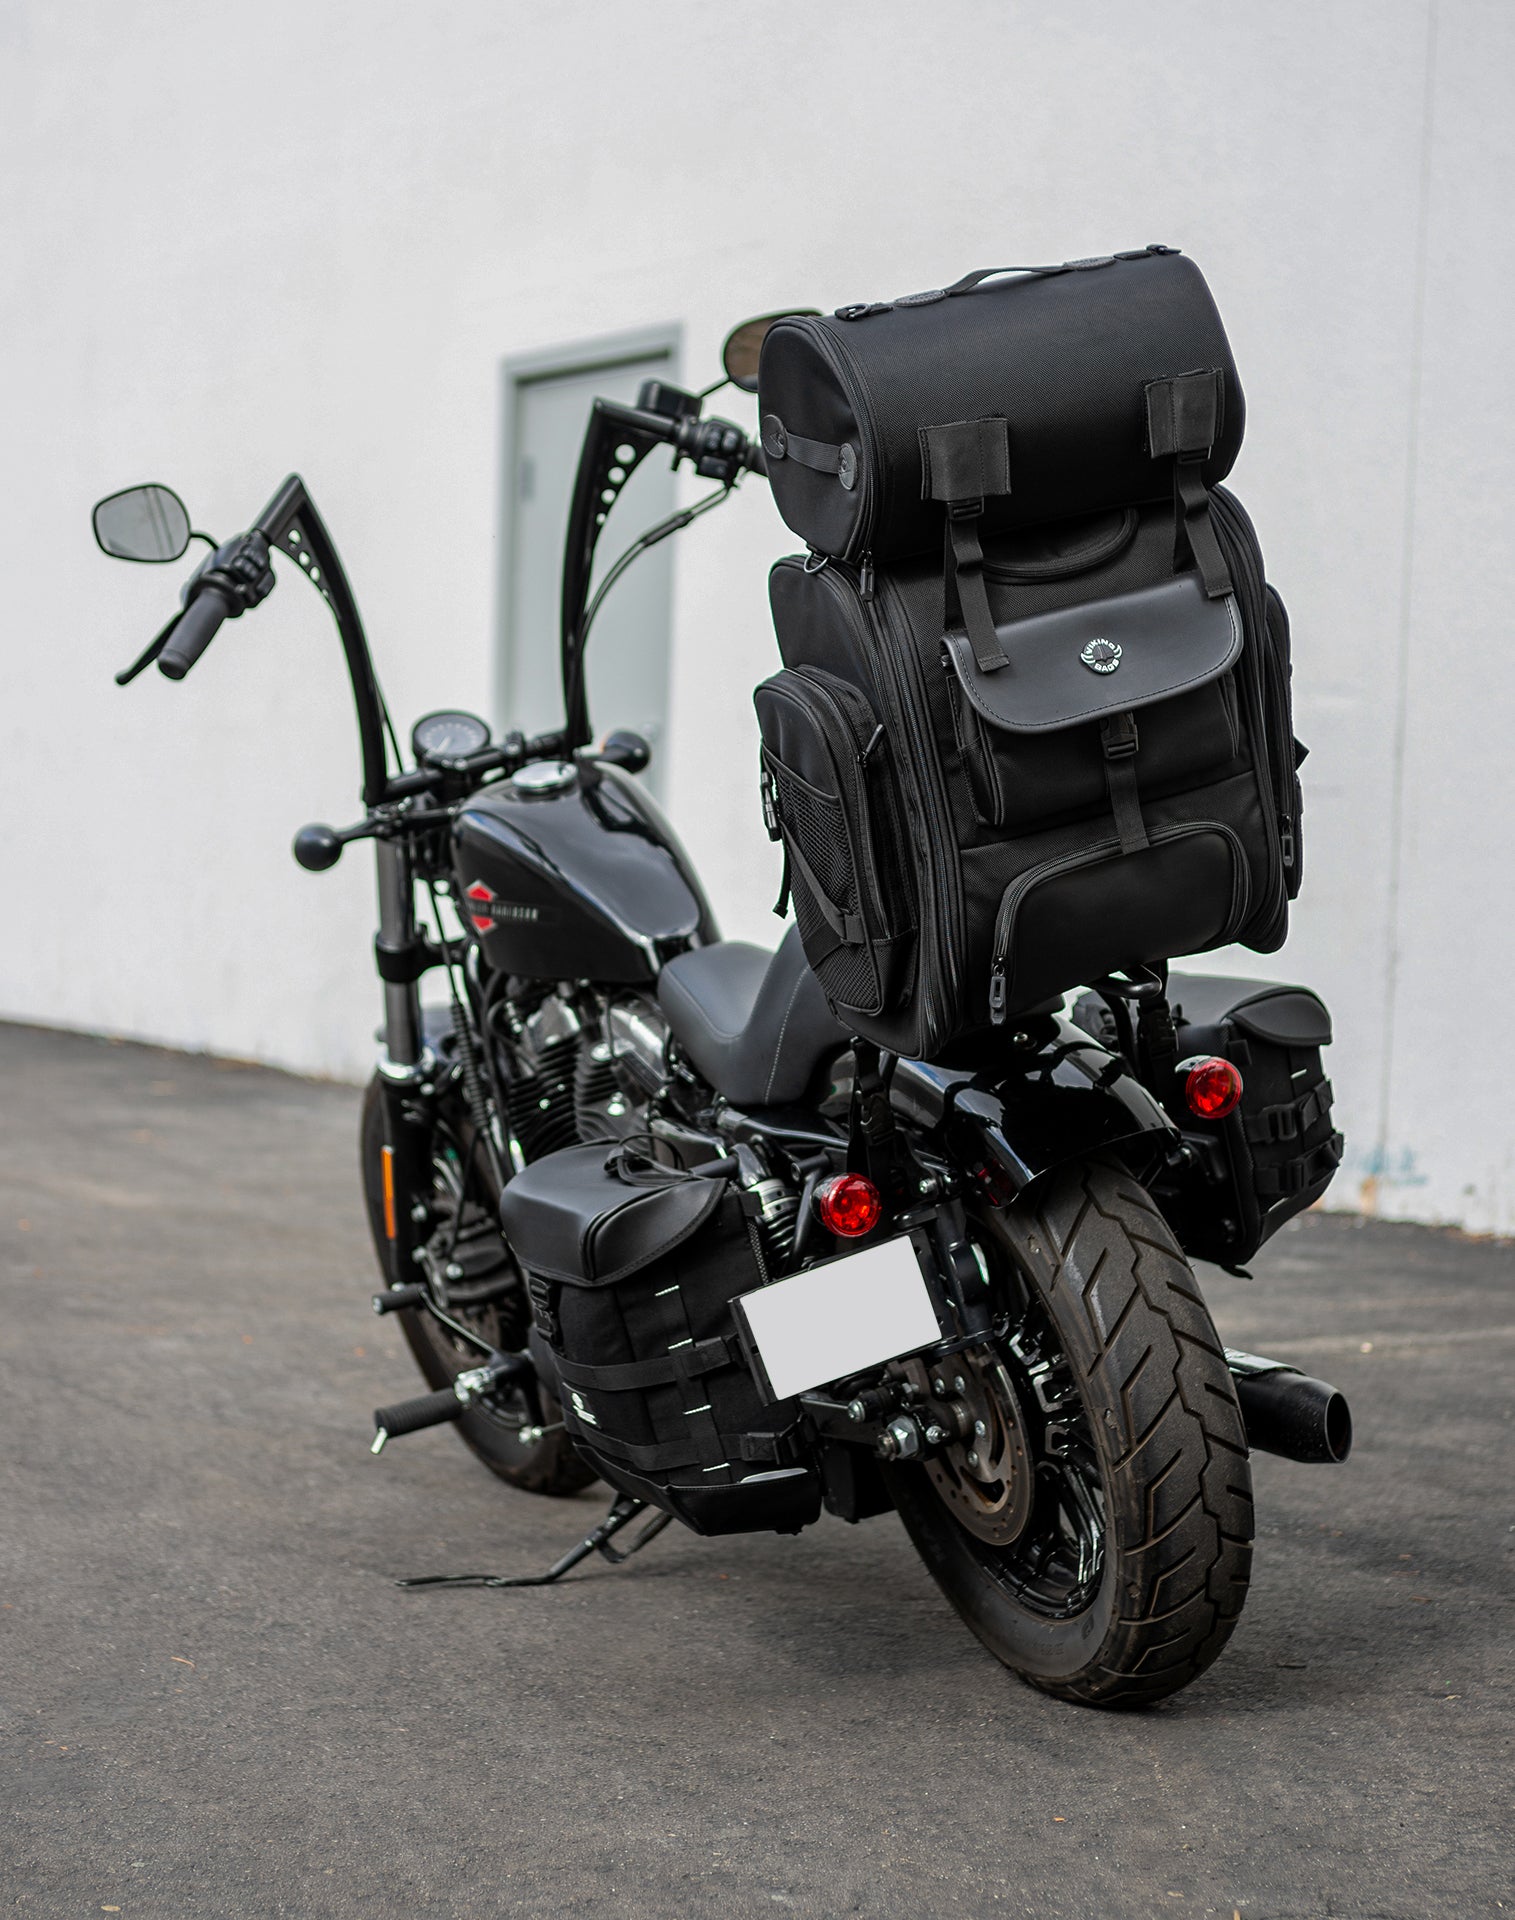 52L - Dwarf XL BMW Motorcycle Sissy Bar Bag